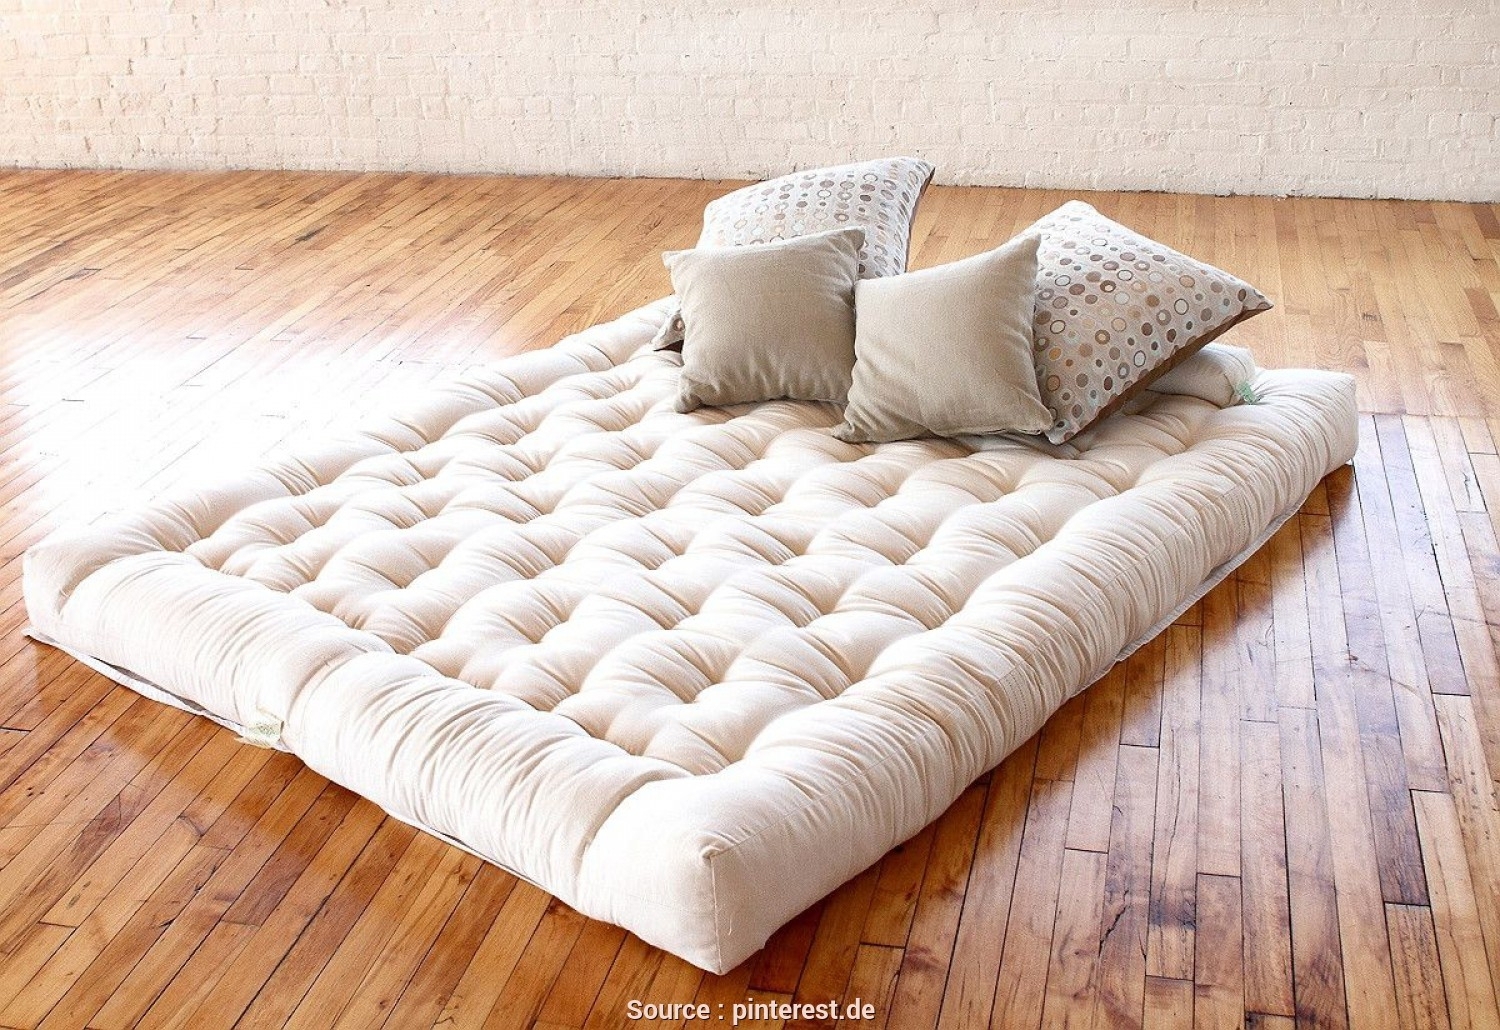 sleeping on futon mattress on floor